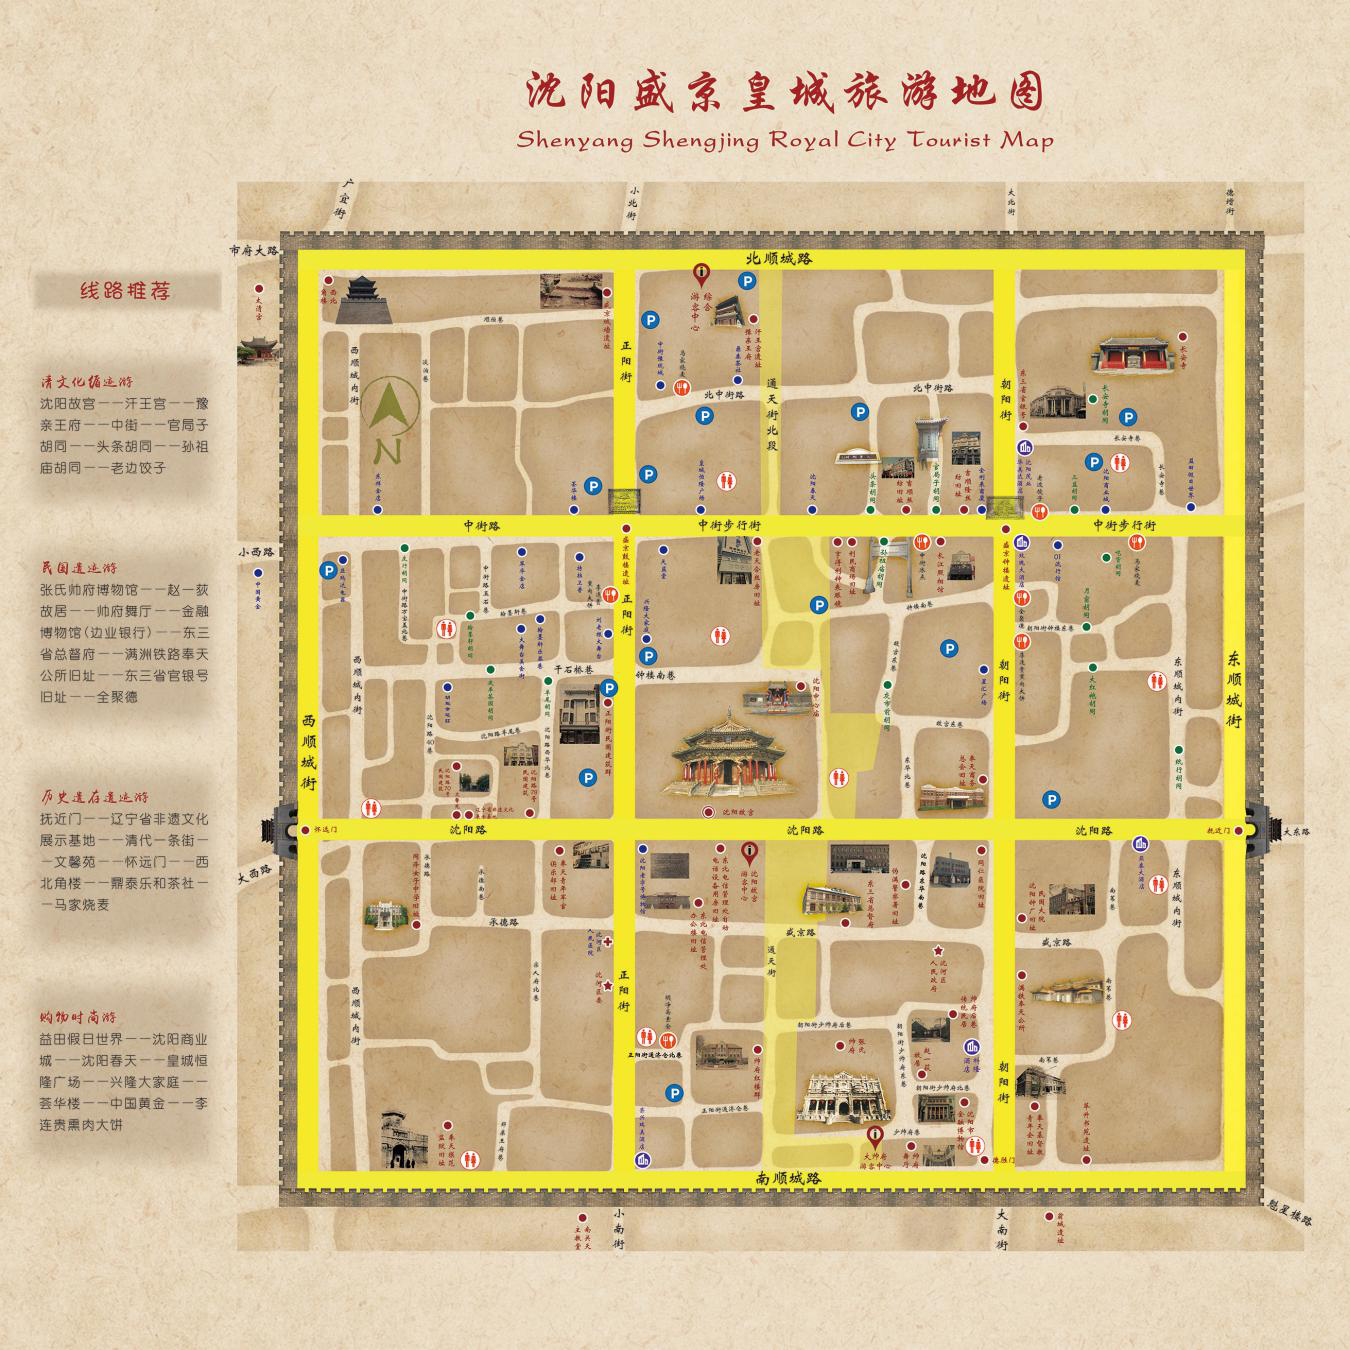 改造工程后的旅游,购物,休闲体验,利用新媒体手段展示沈阳市盛京皇城